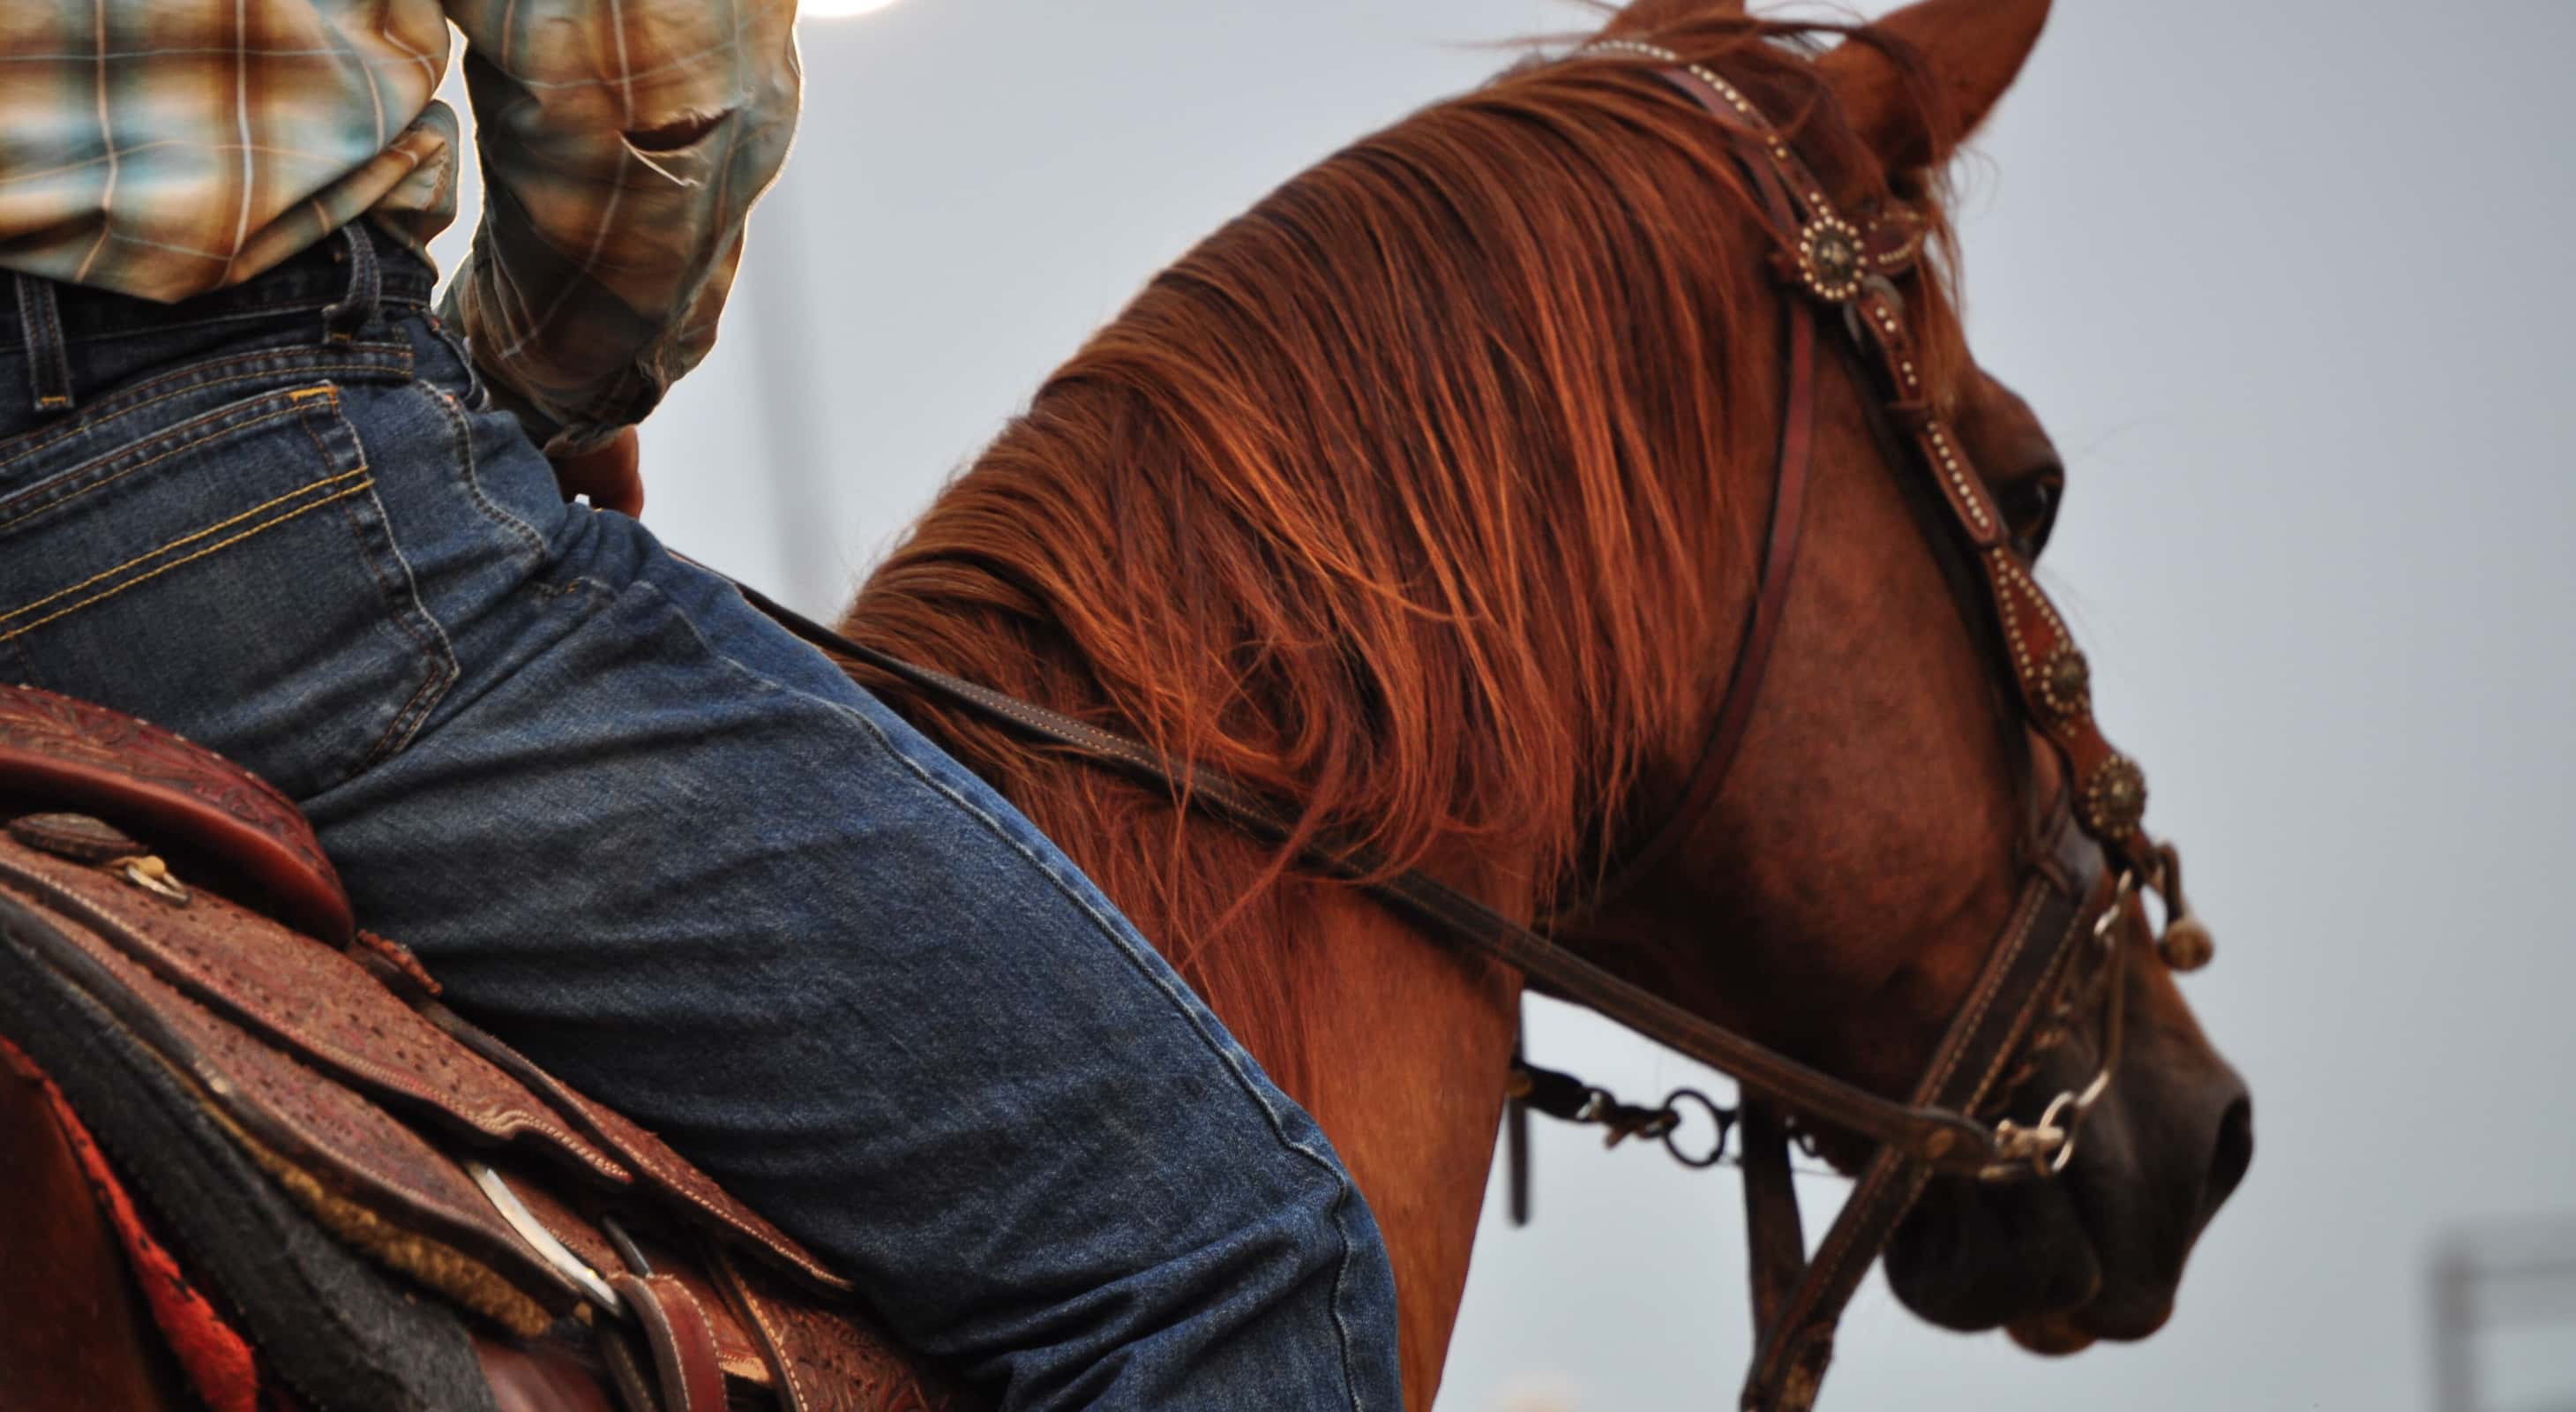 Cowboy on horseback at a rodeo